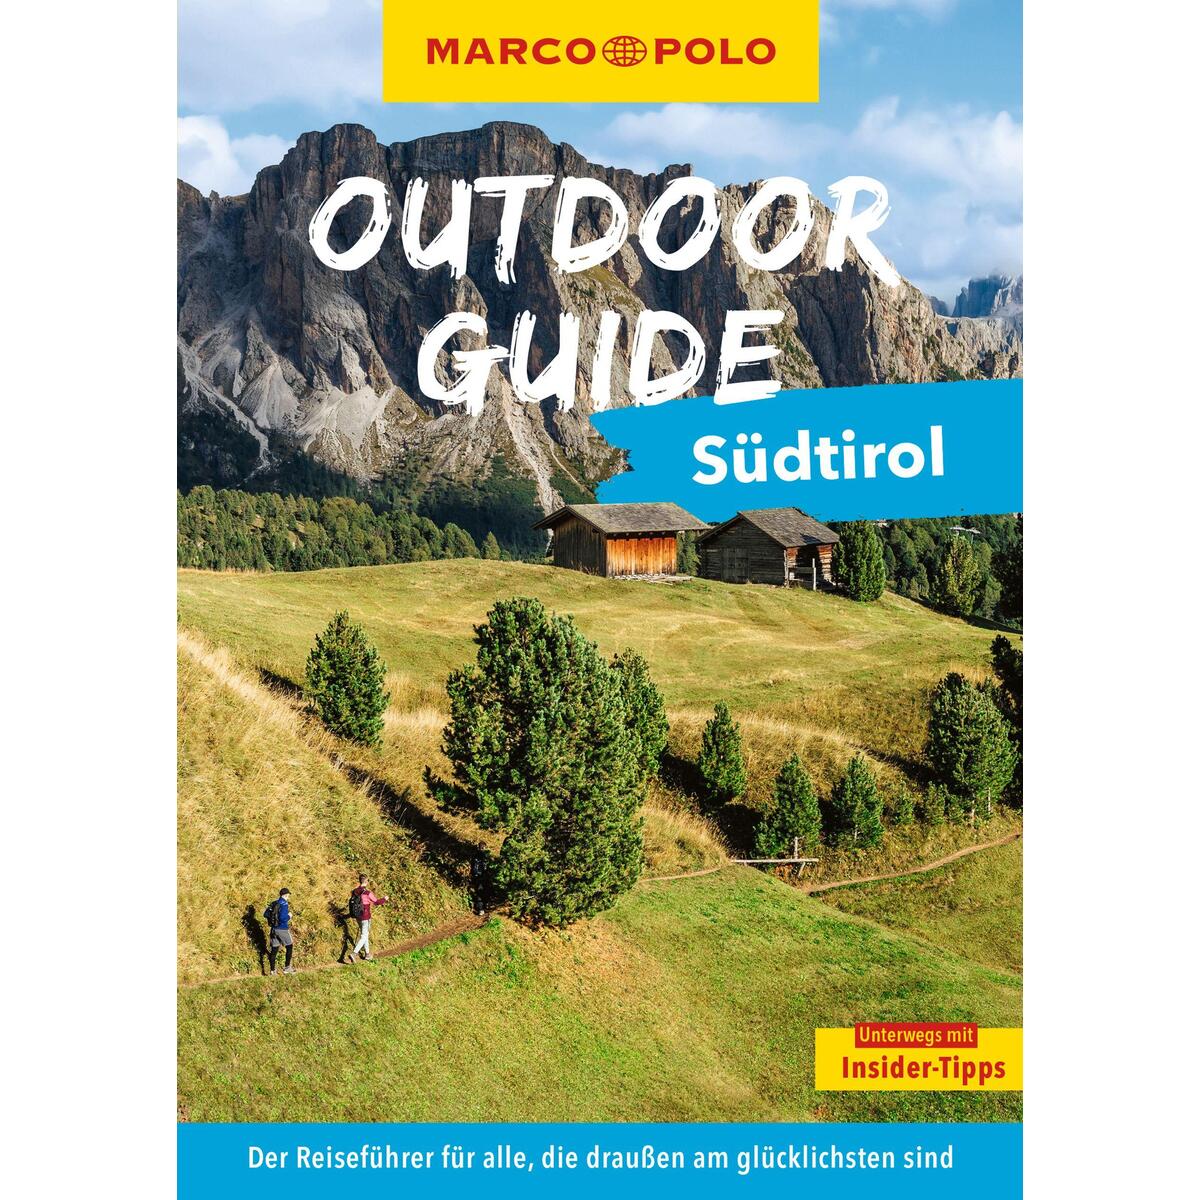 MARCO POLO OUTDOOR GUIDE Reiseführer Südtirol von Mairdumont